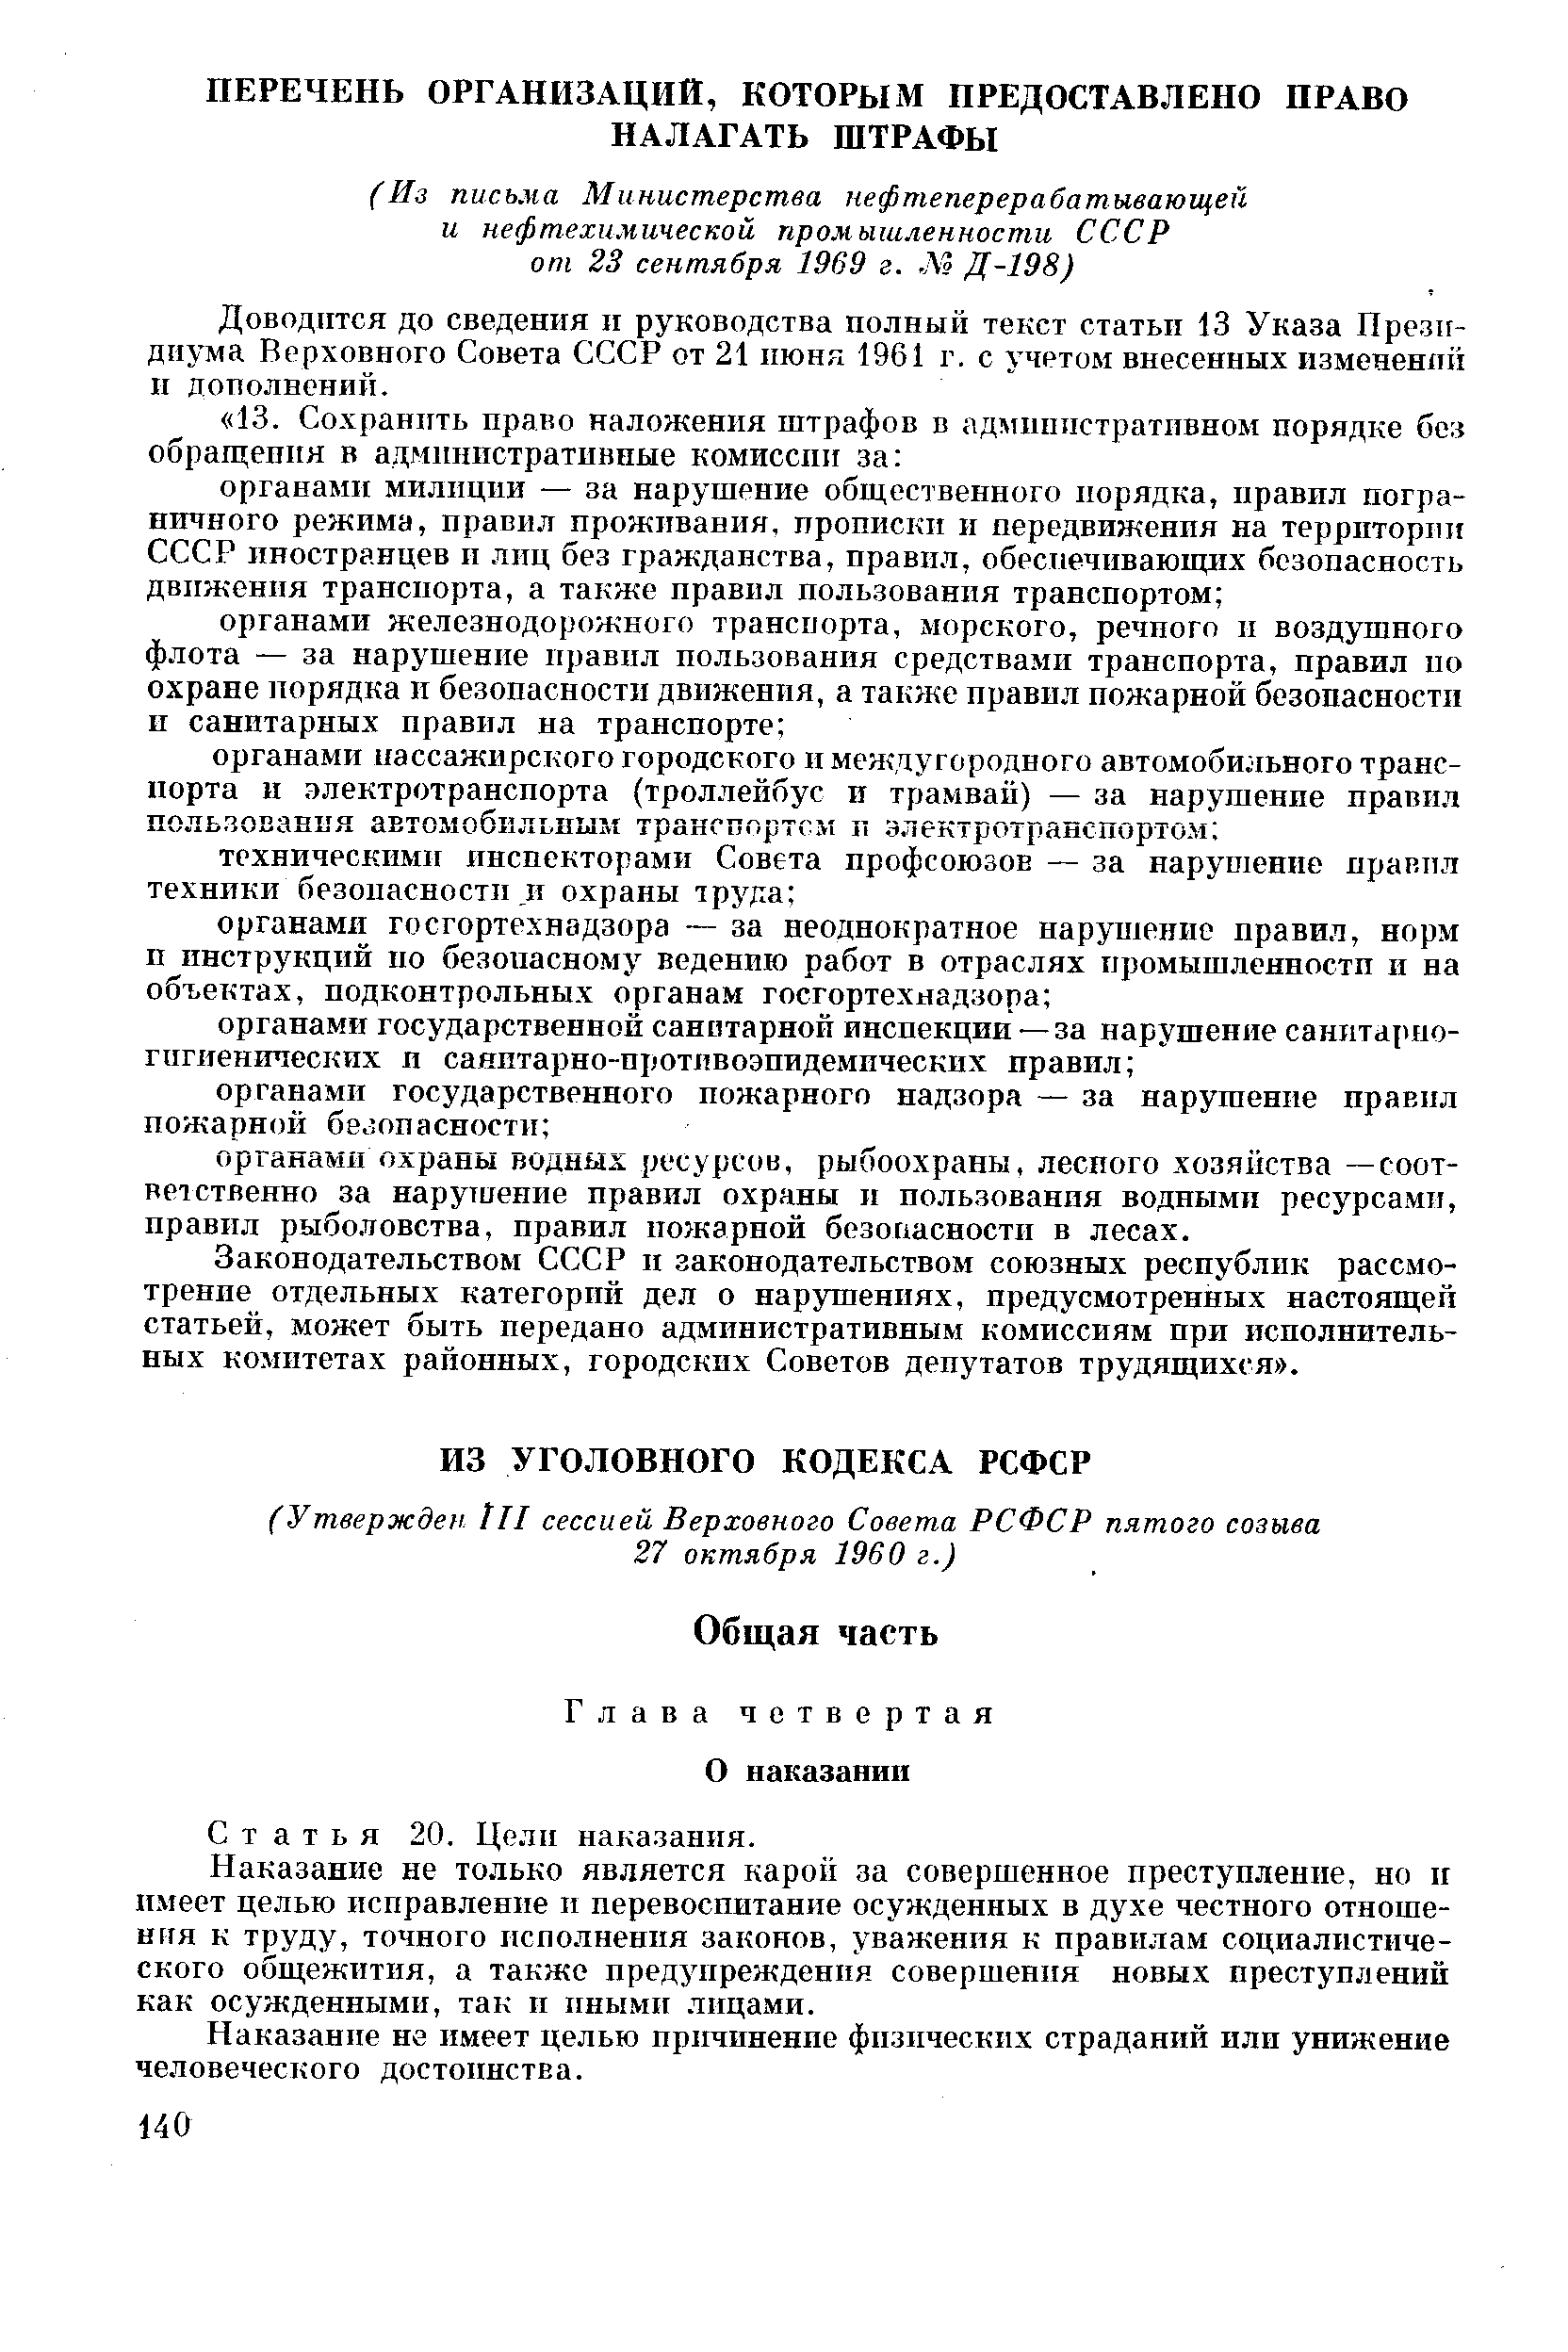 Доводится до сведения п руководства полный текст статьи 13 Указа Президиума Верховного Совета СССР от 21 пюня 1961 г. с учетом внесенных измененпп п дополнений.